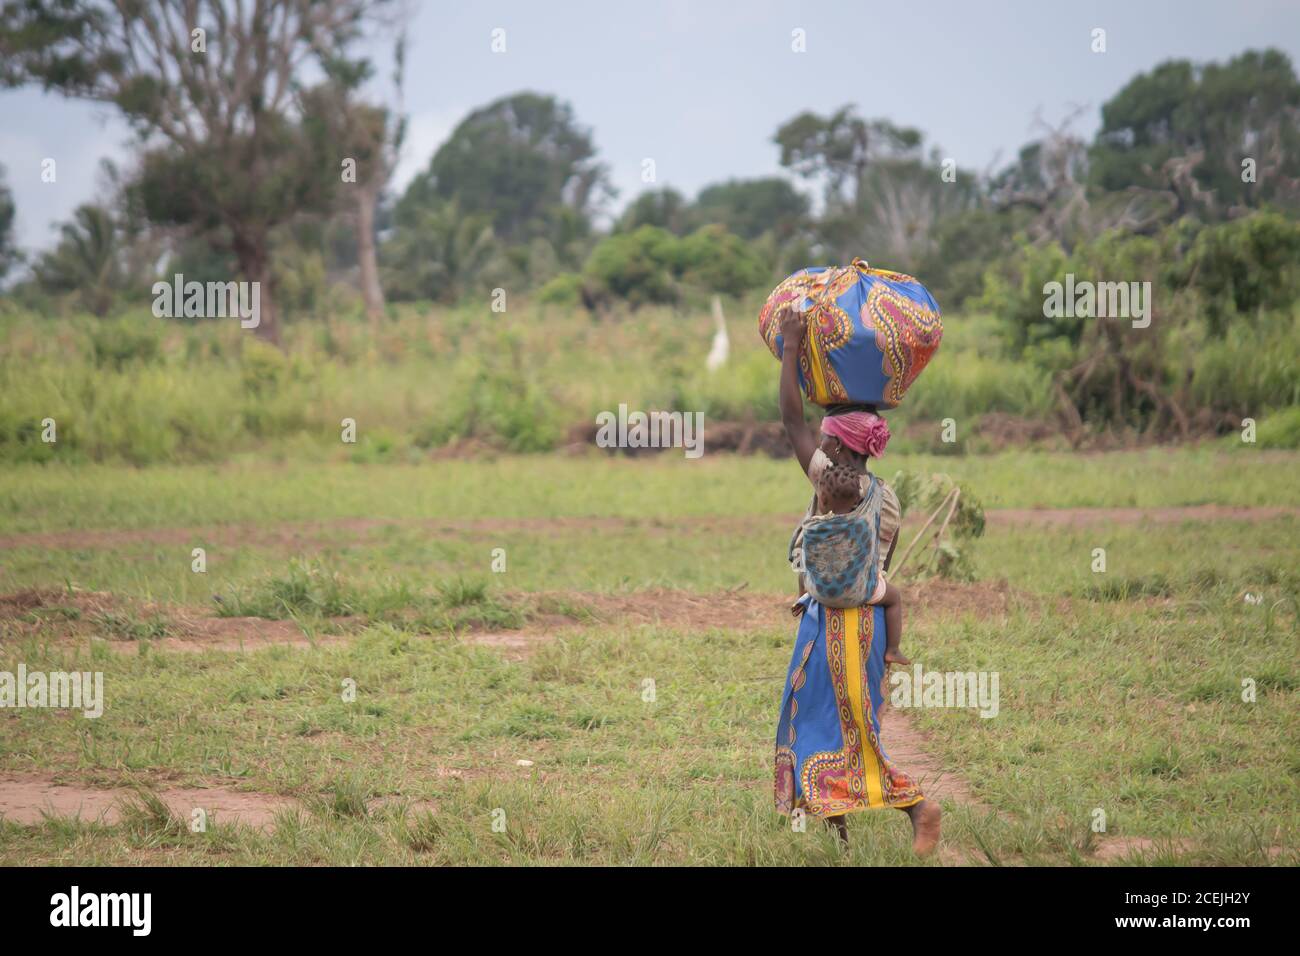 Le donne africane camminano nella natura, vestite con abiti tradizionali colorati, trasportando grandi carichi sulla testa Foto Stock